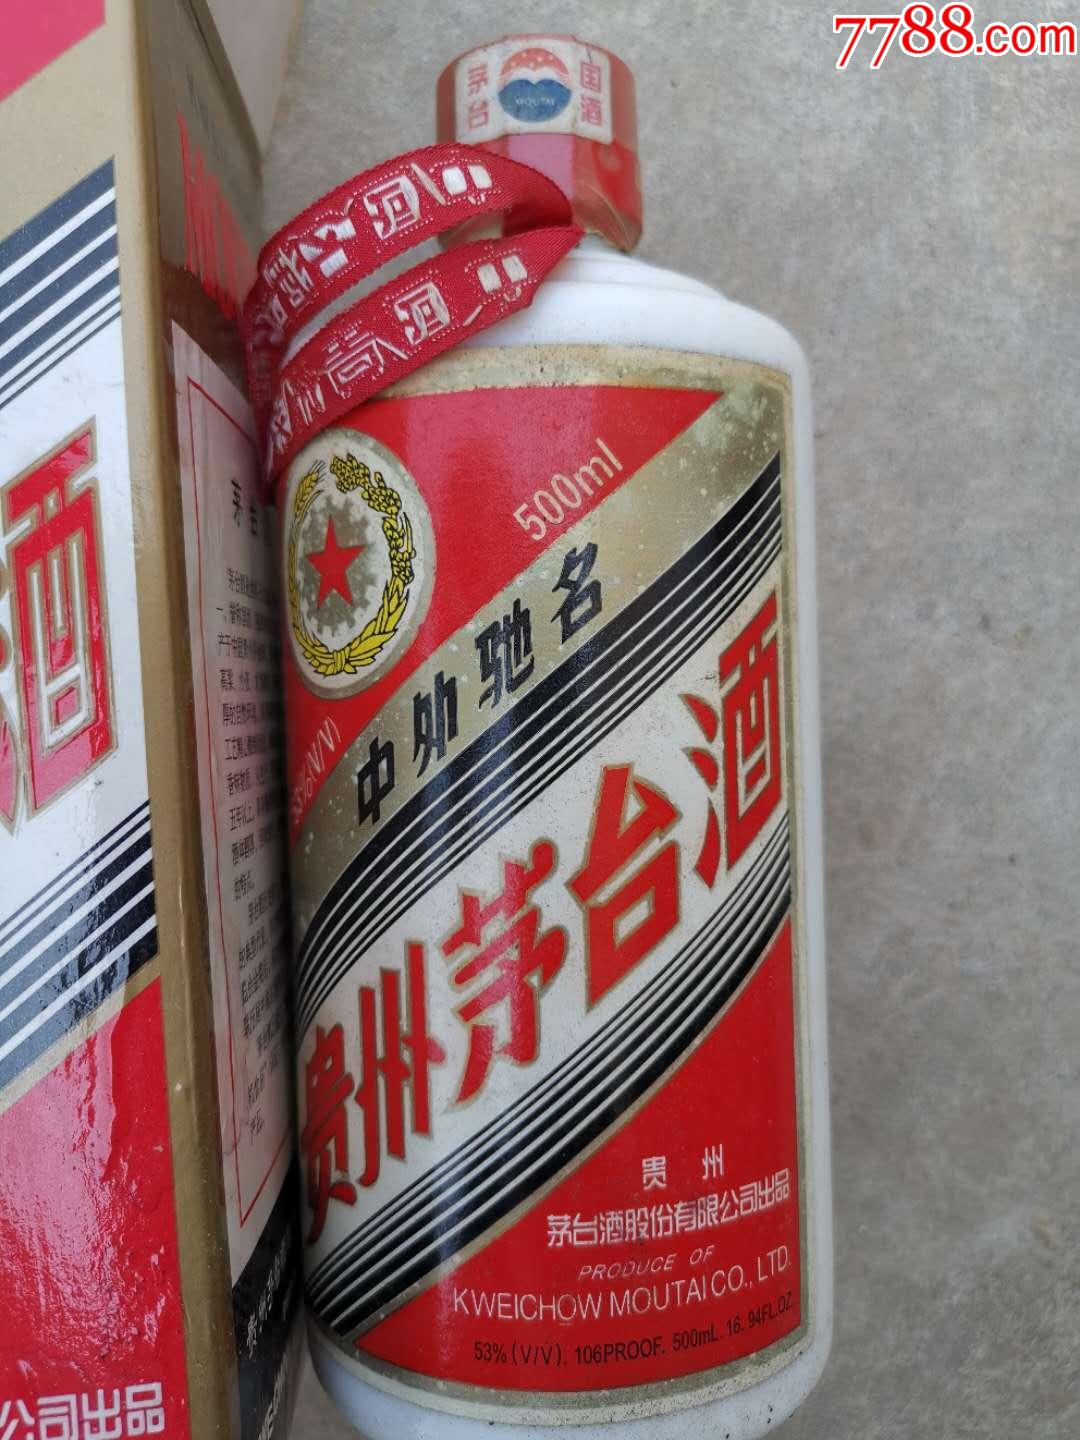 2006年老茅台酒-原瓶原盒原装贵州茅台酒!